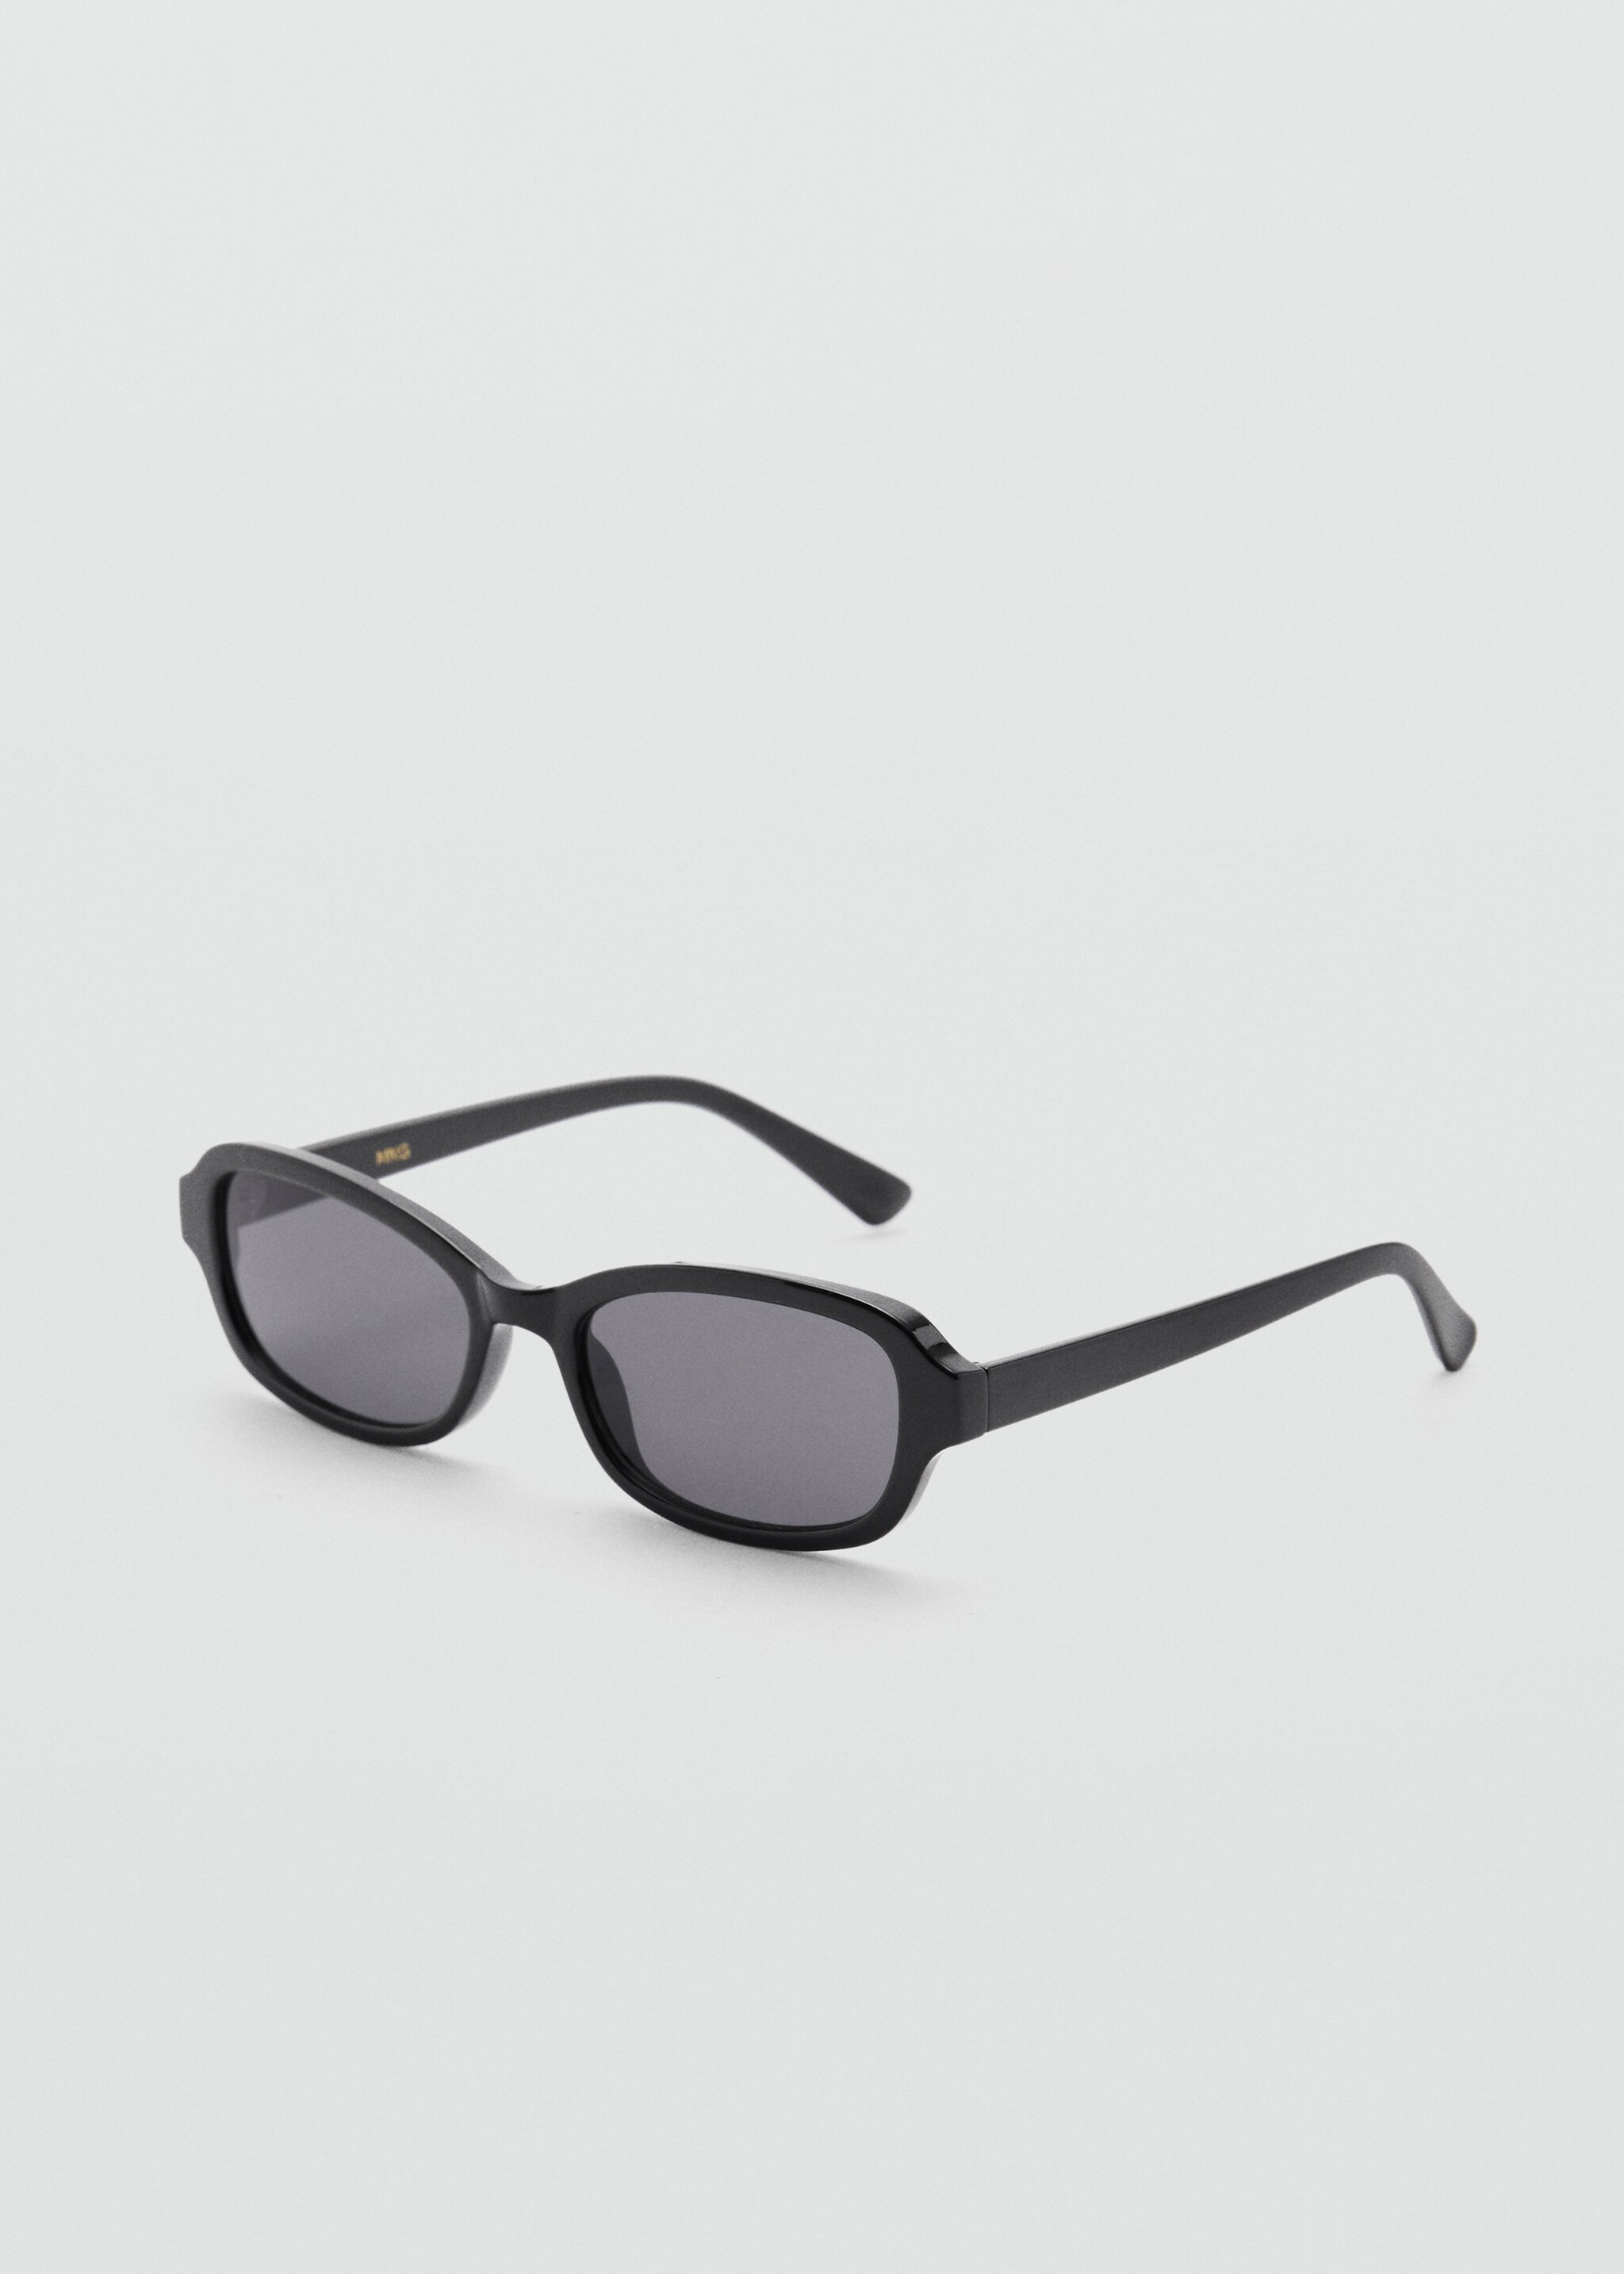 Rectangular sunglasses - Medium plane